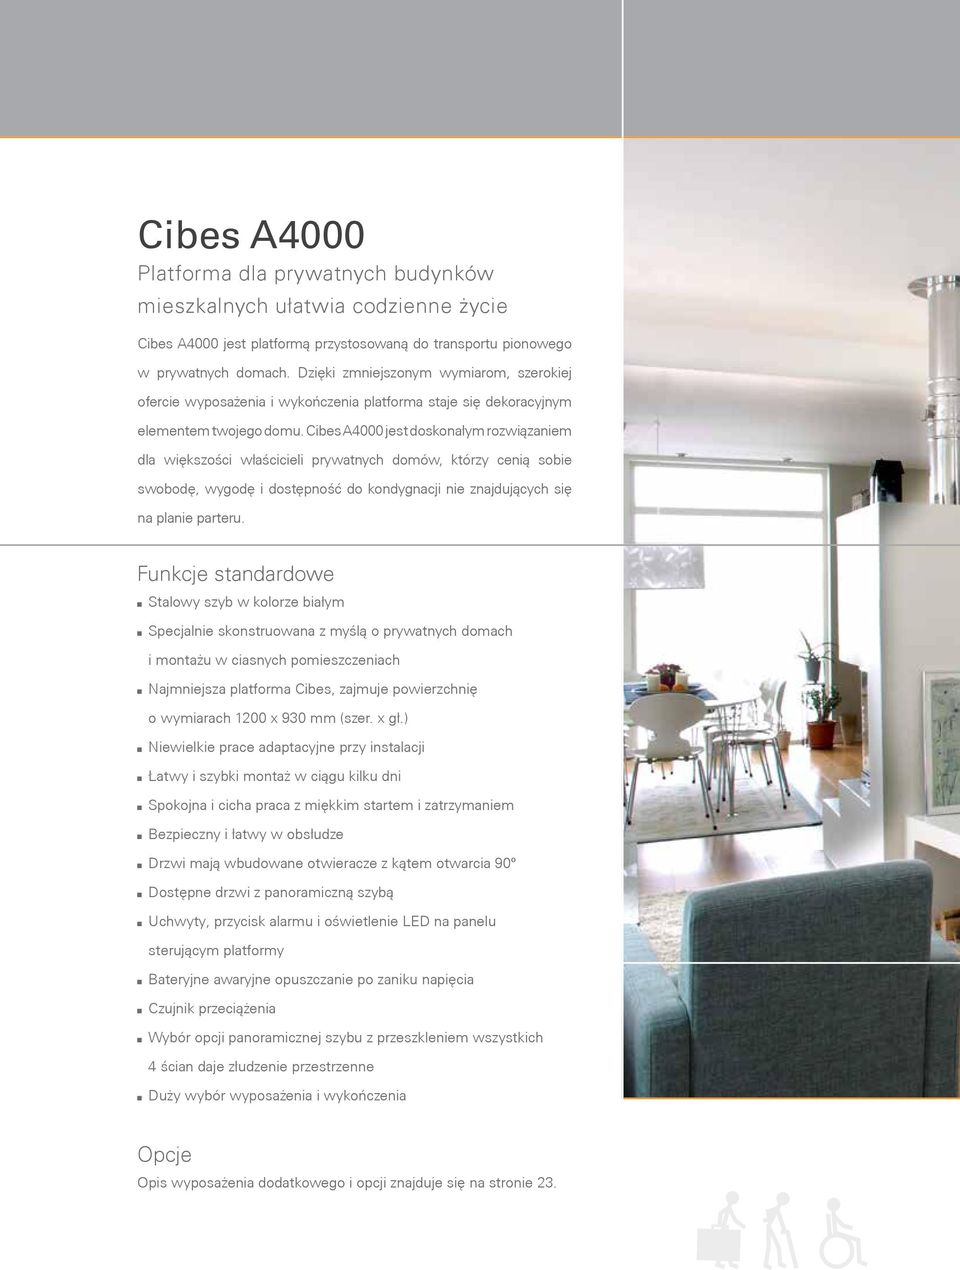 Cibes A4000 jest doskoałym rozwiązaiem dla większości właścicieli prywatych domów, którzy ceią sobie swobodę, wygodę i dostępość do kodygacji ie zajdujących się a plaie parteru.